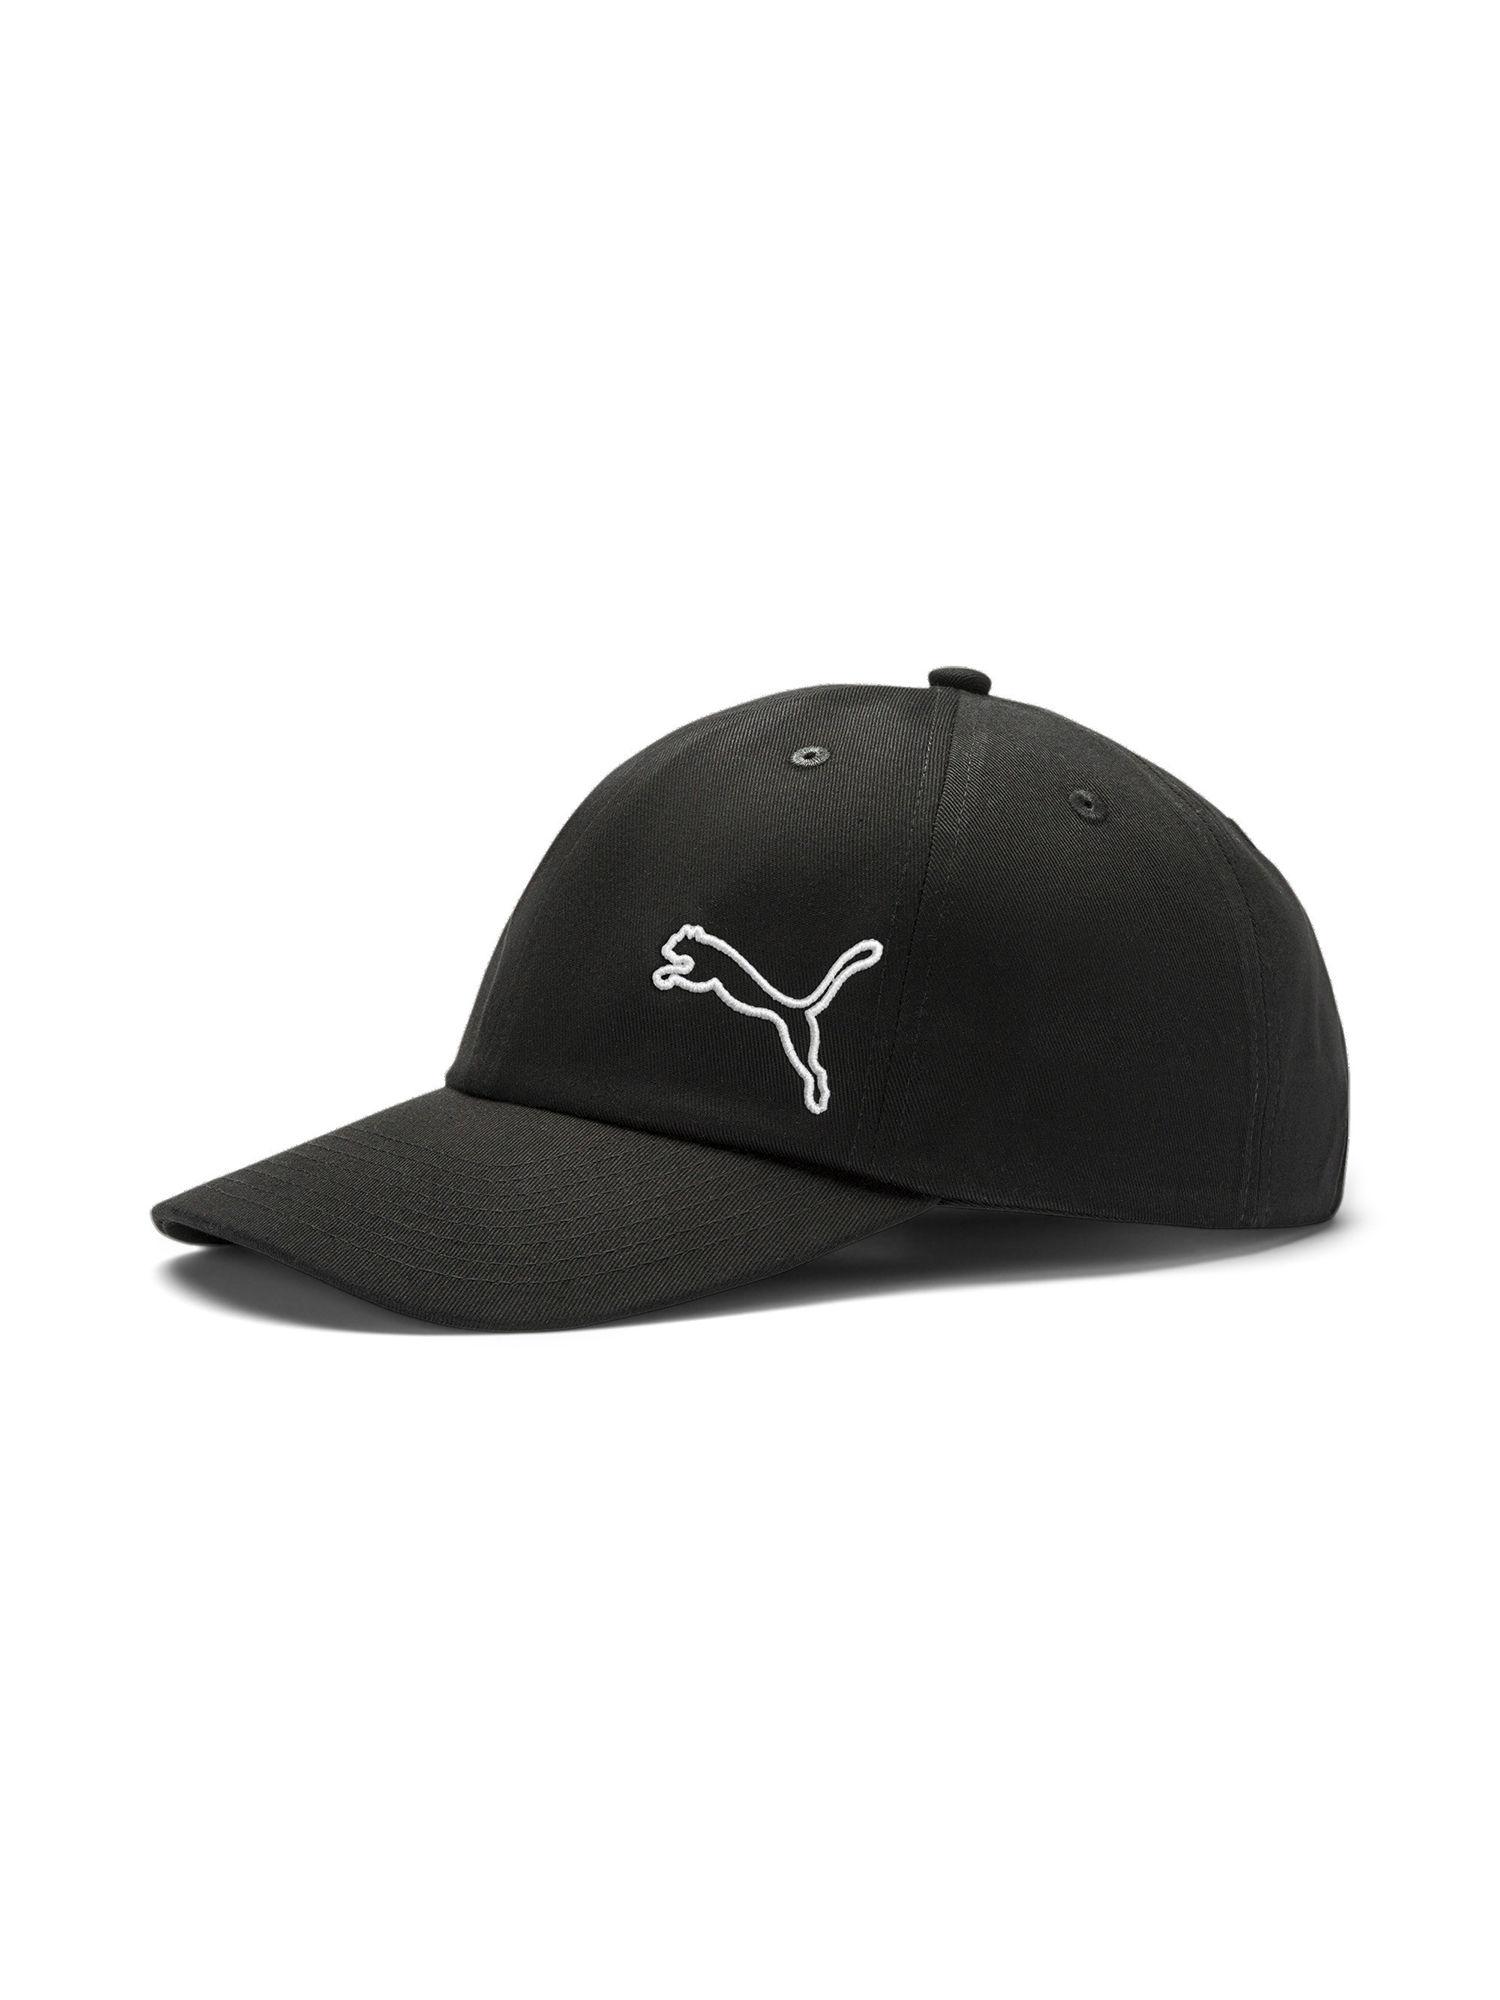 essentials unisex solid black cap ii